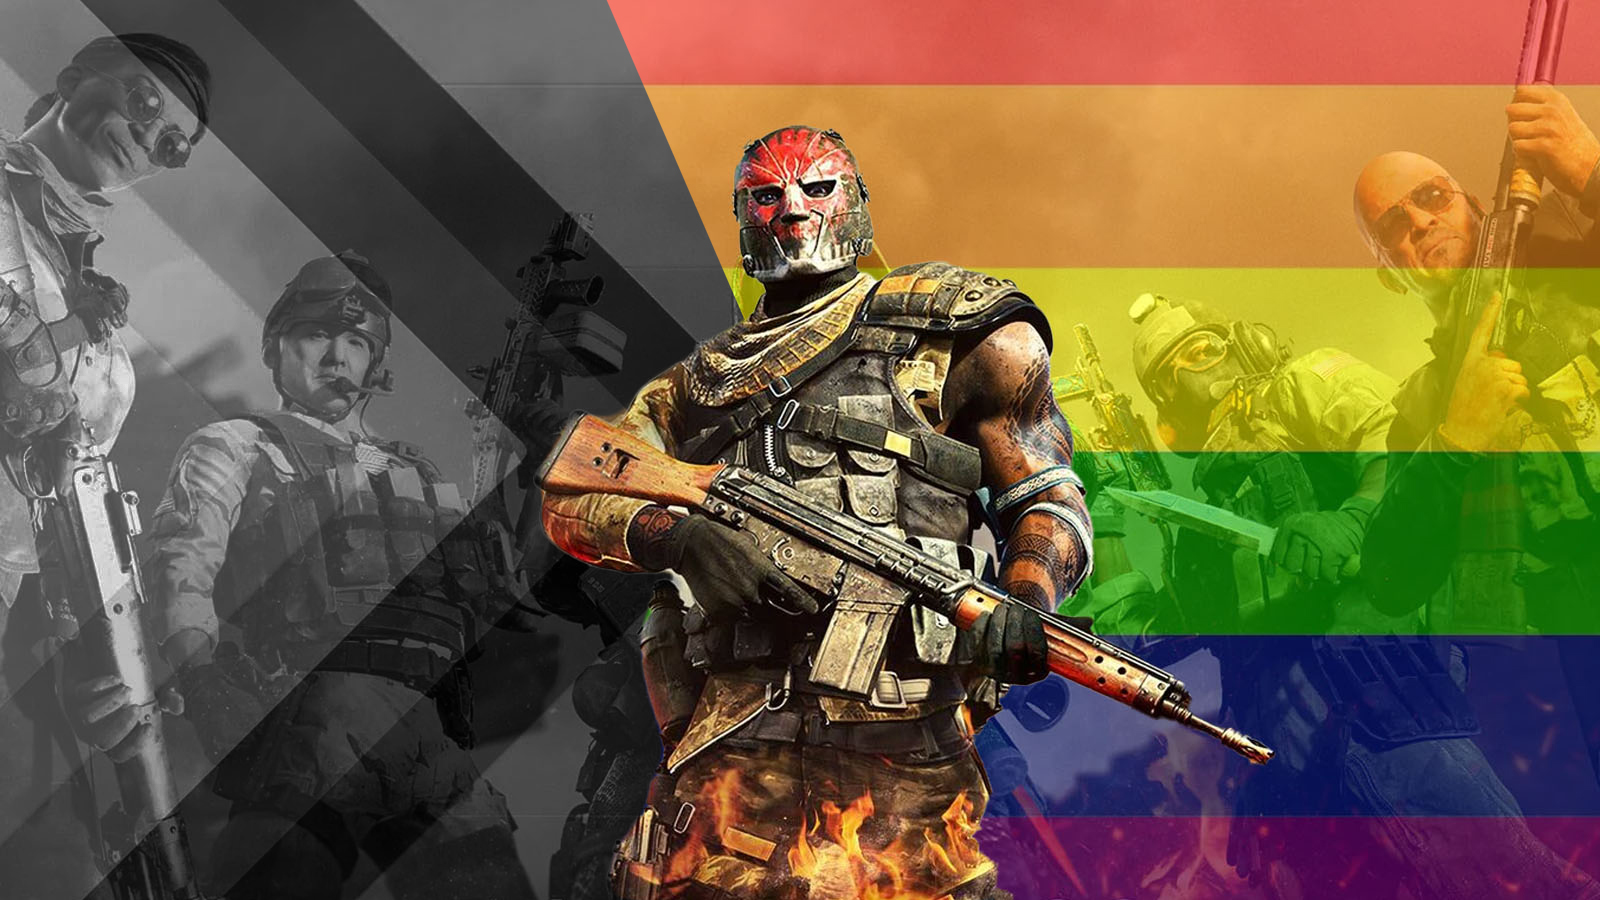 Det nyeste «Call of Duty»-spillet feirer Pride. Men passer på å sensurere det bort for spillere i Midtøsten. (Illustrasjon/Redigering: Presse/Subjekt.)